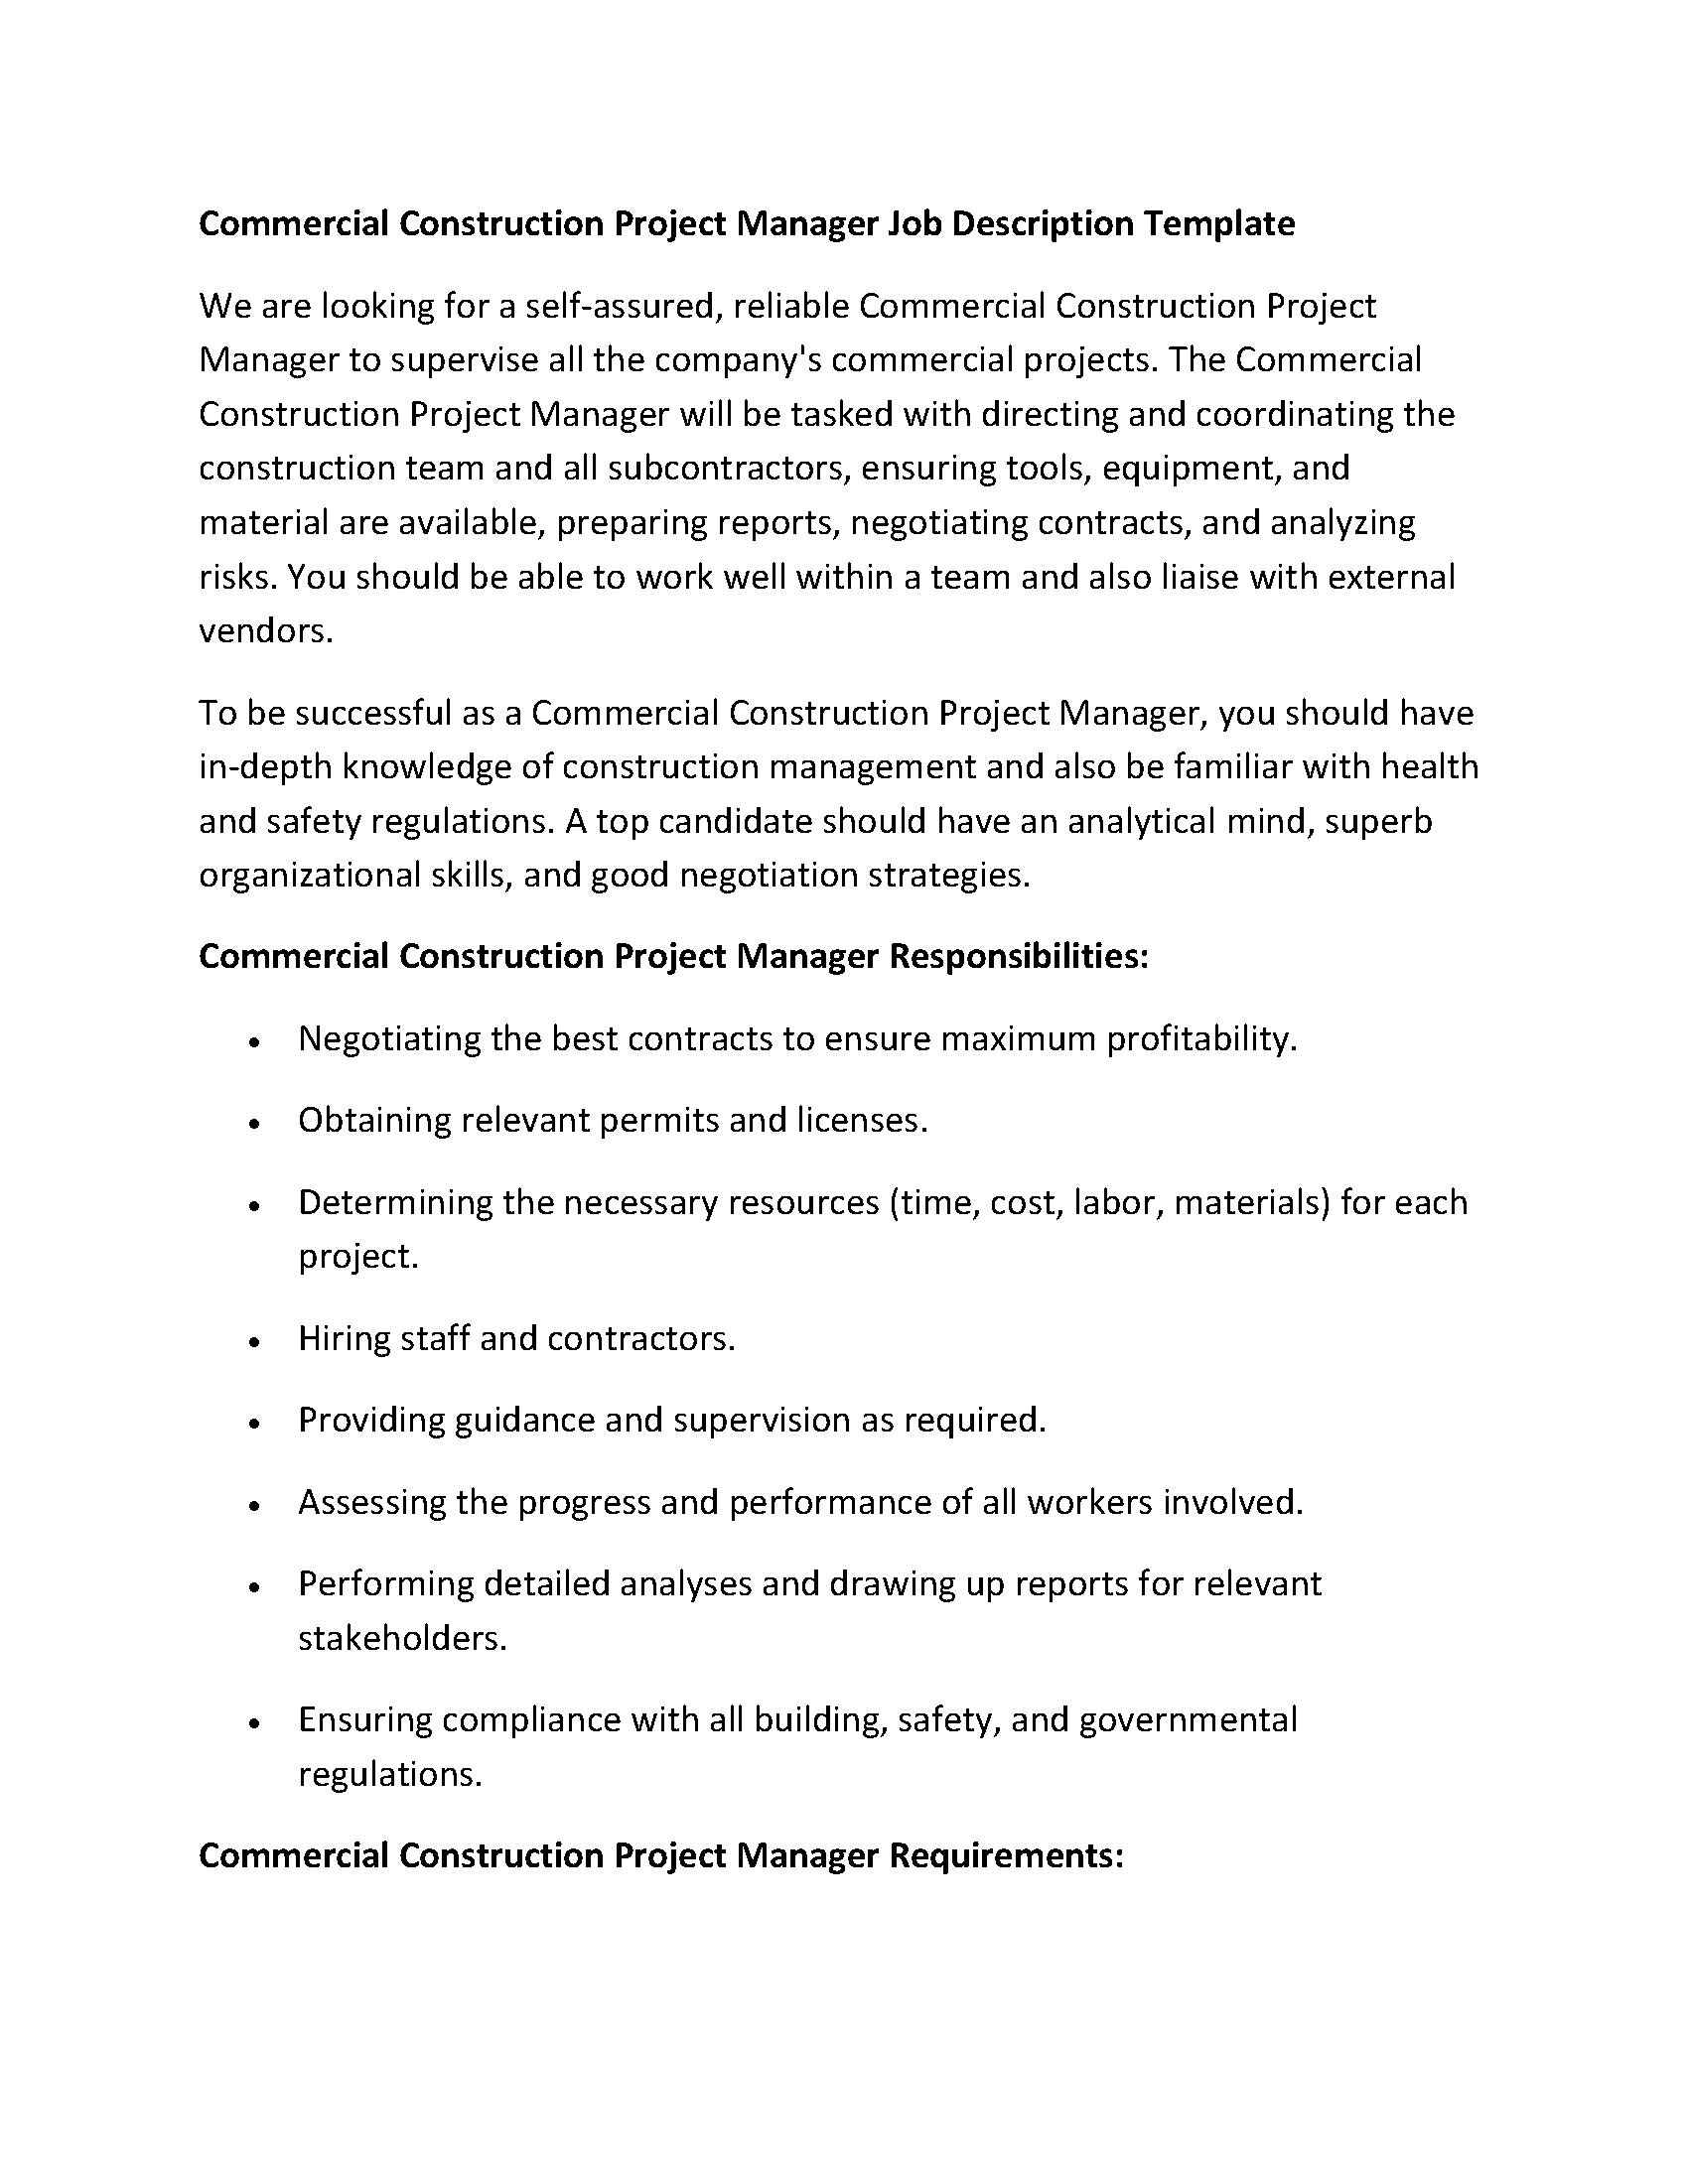 Commercial Construction Project Manager Job Description Templat1